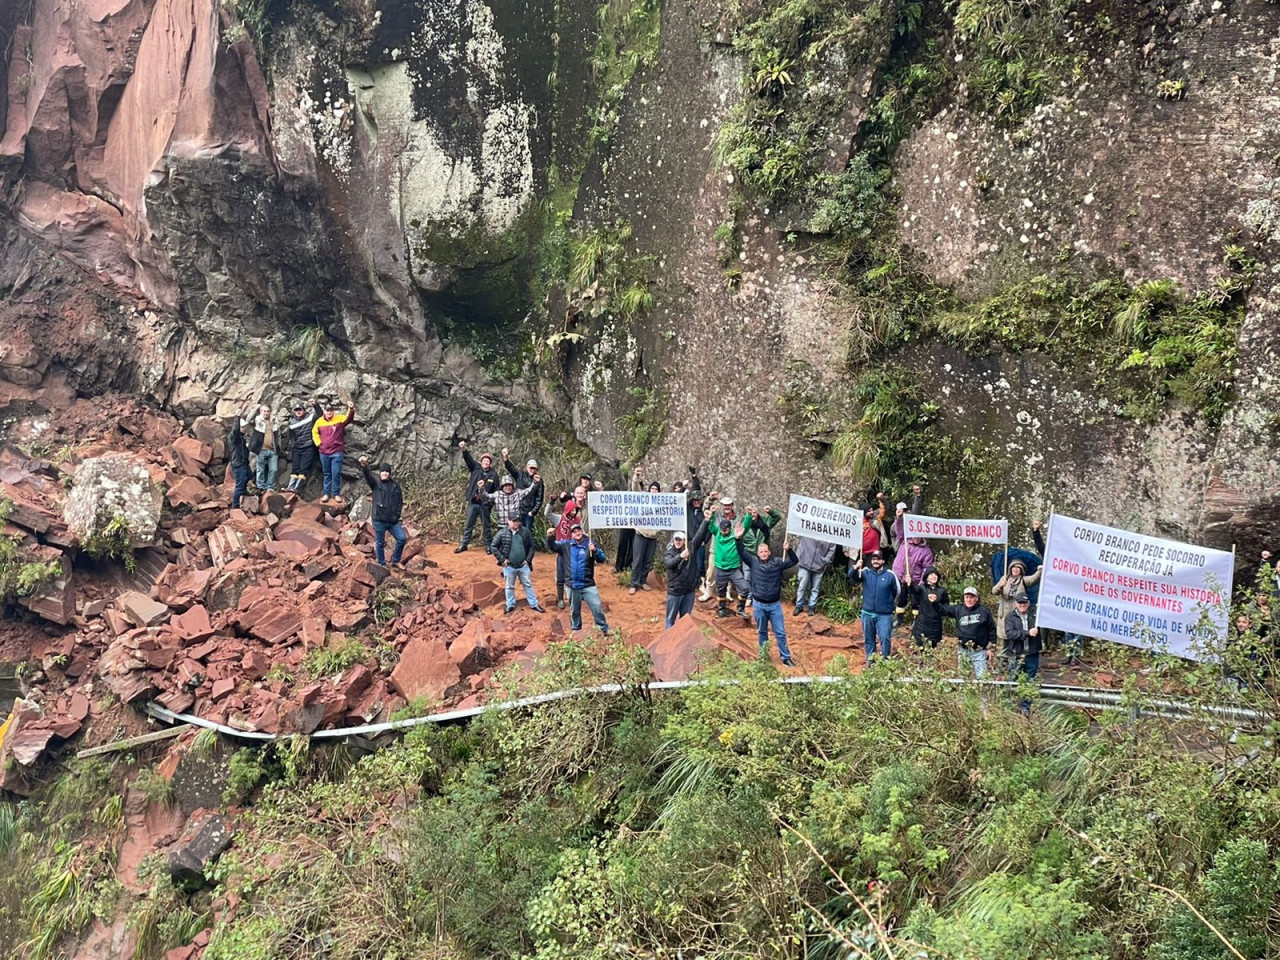 #ParaTodosVerem Na foto, populares munidos com faixas e cartazes manifestam-se pela demora do Estado em abrir a SC-370 na Serra do Corvo Branco, entre Grão-Pará e Urubici